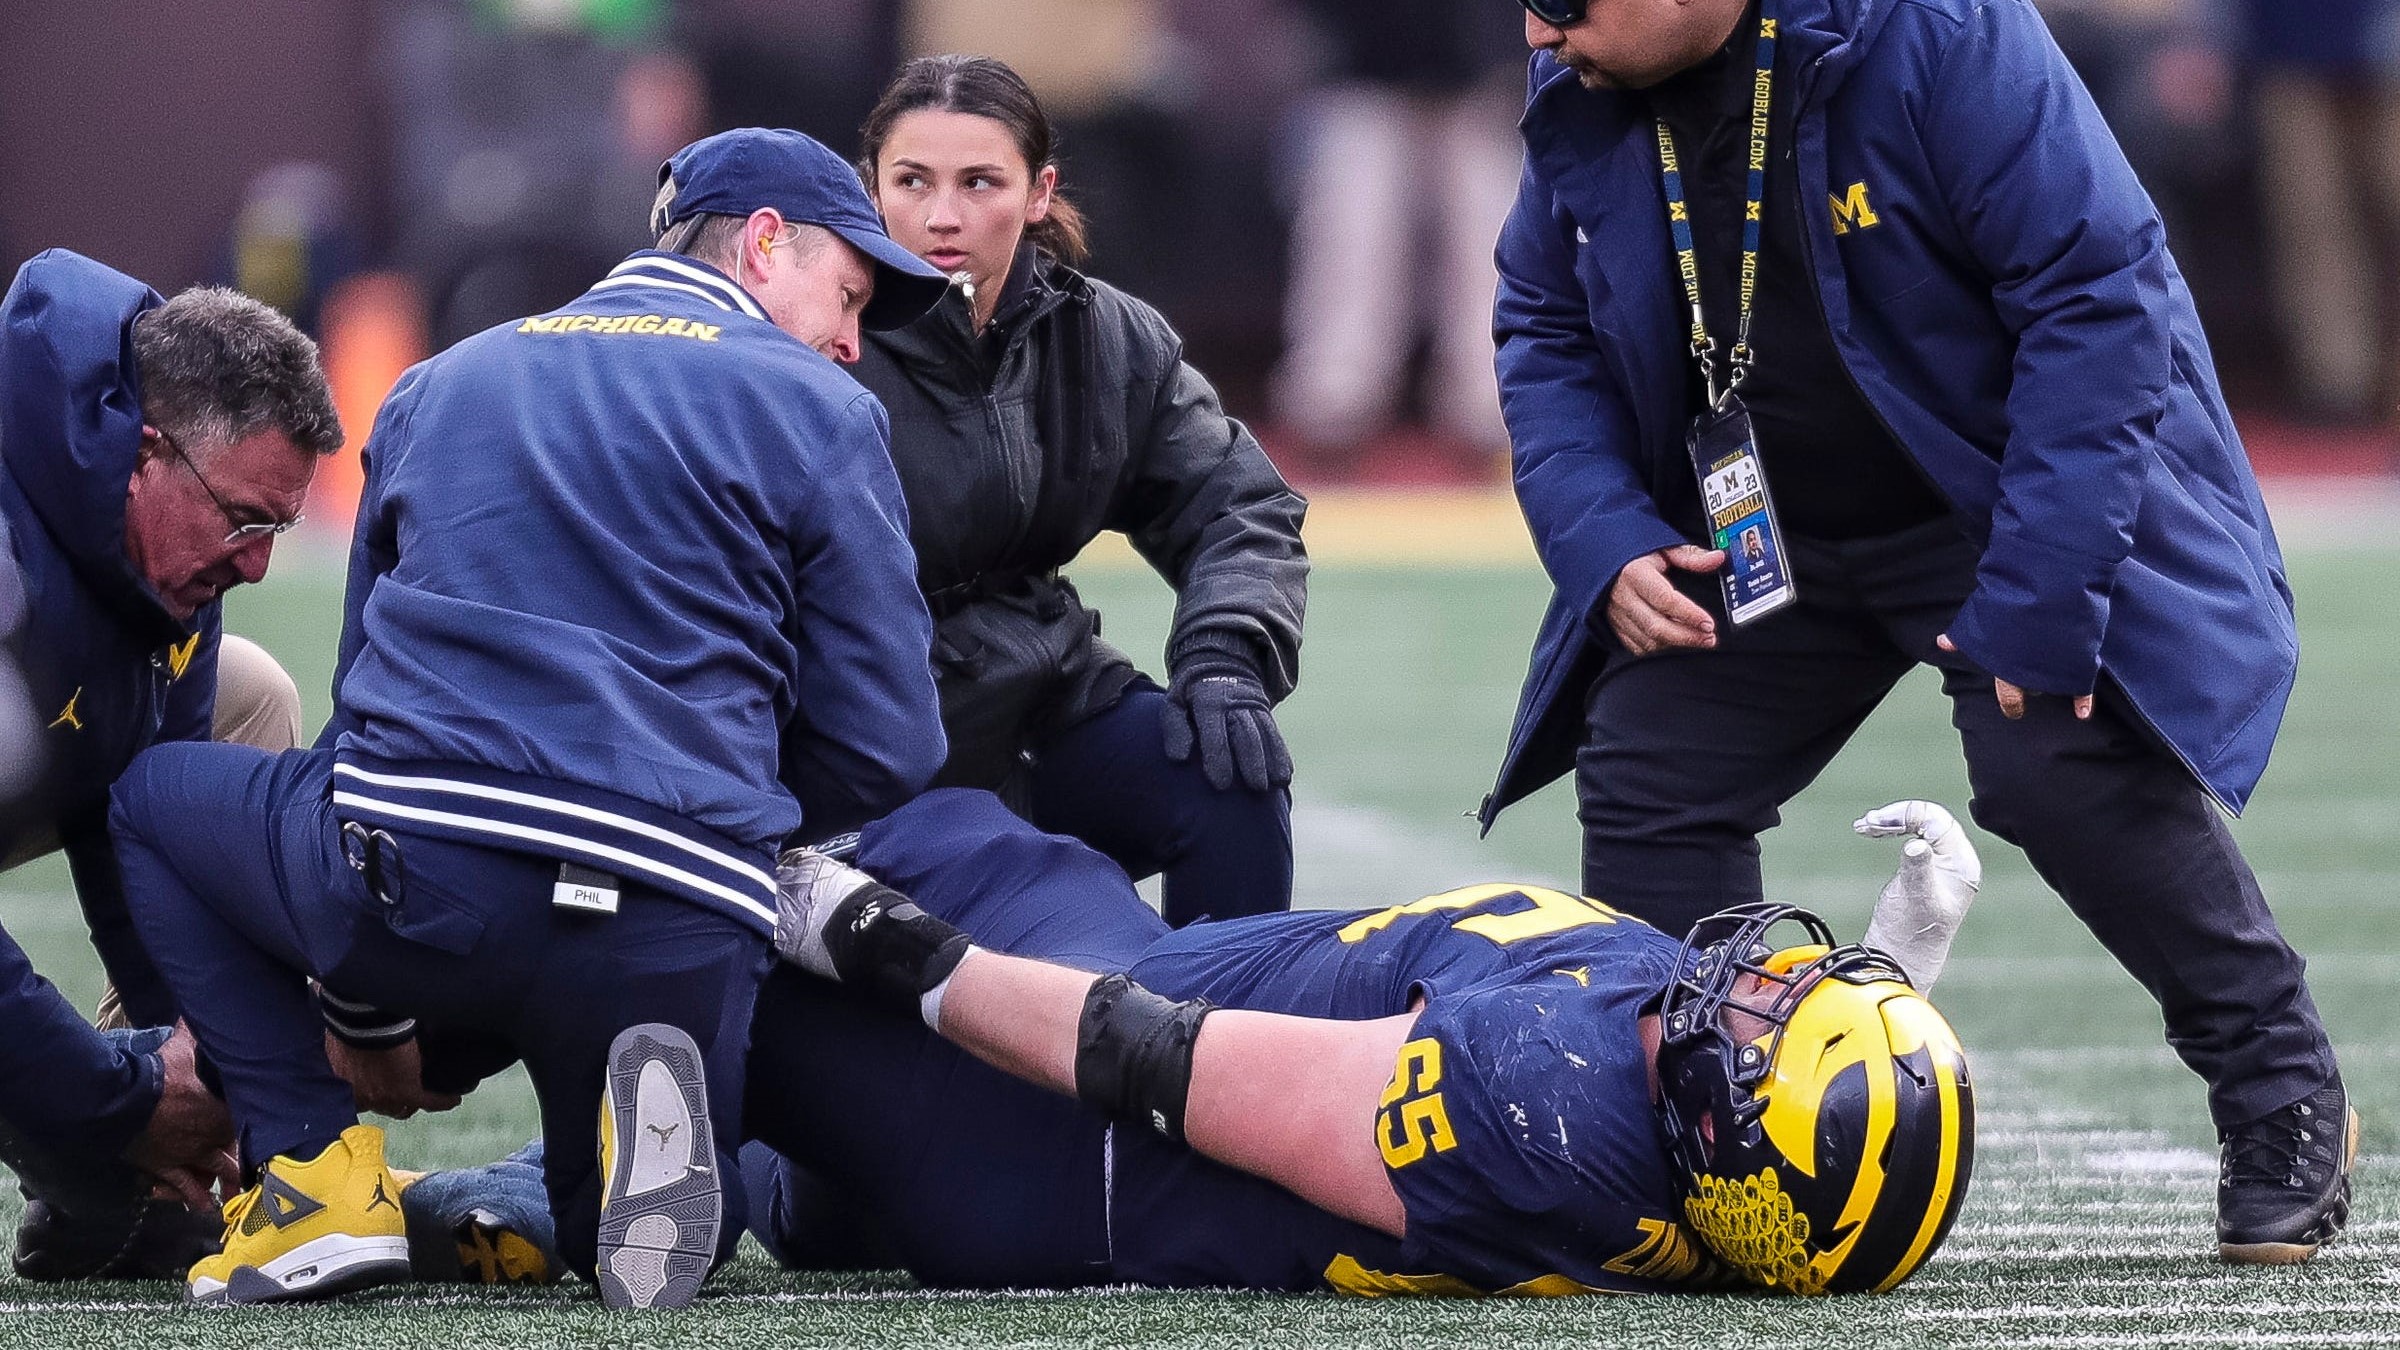 Michigan football, Ohio State, Zak Zinter, injury, surgery